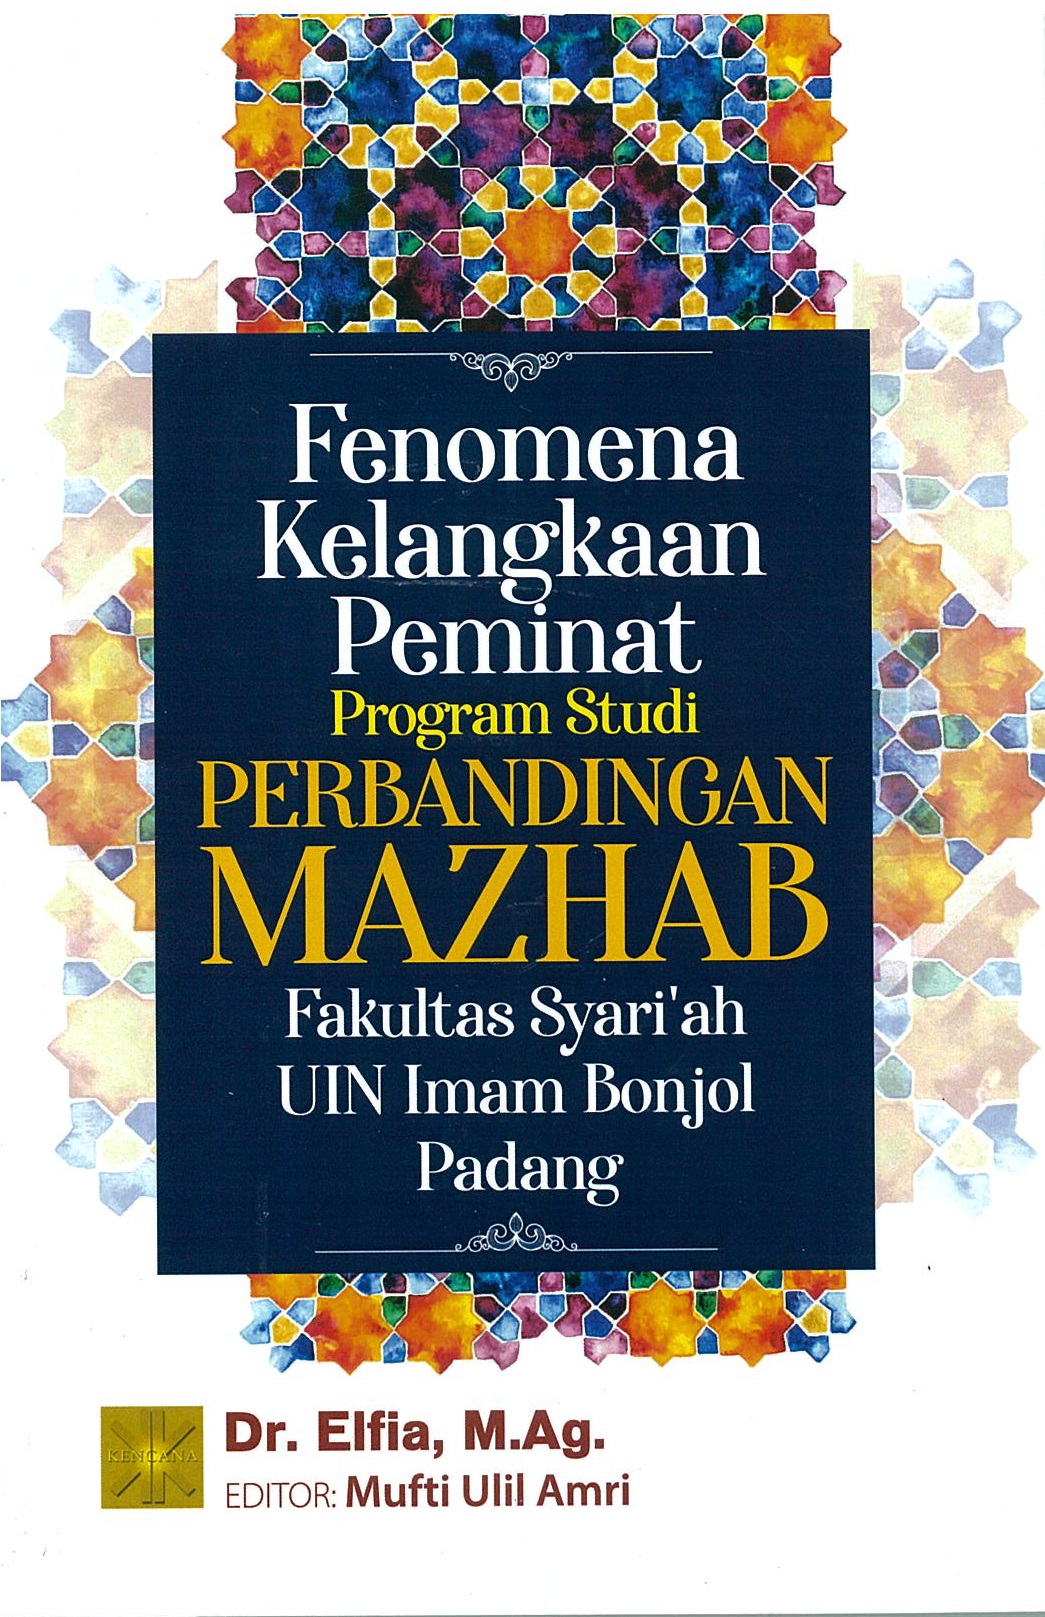 Fenomena kelangkaan peminat program studi perbandingan mazhab fakultas syari'ah UIN Imam Bonjol Padang